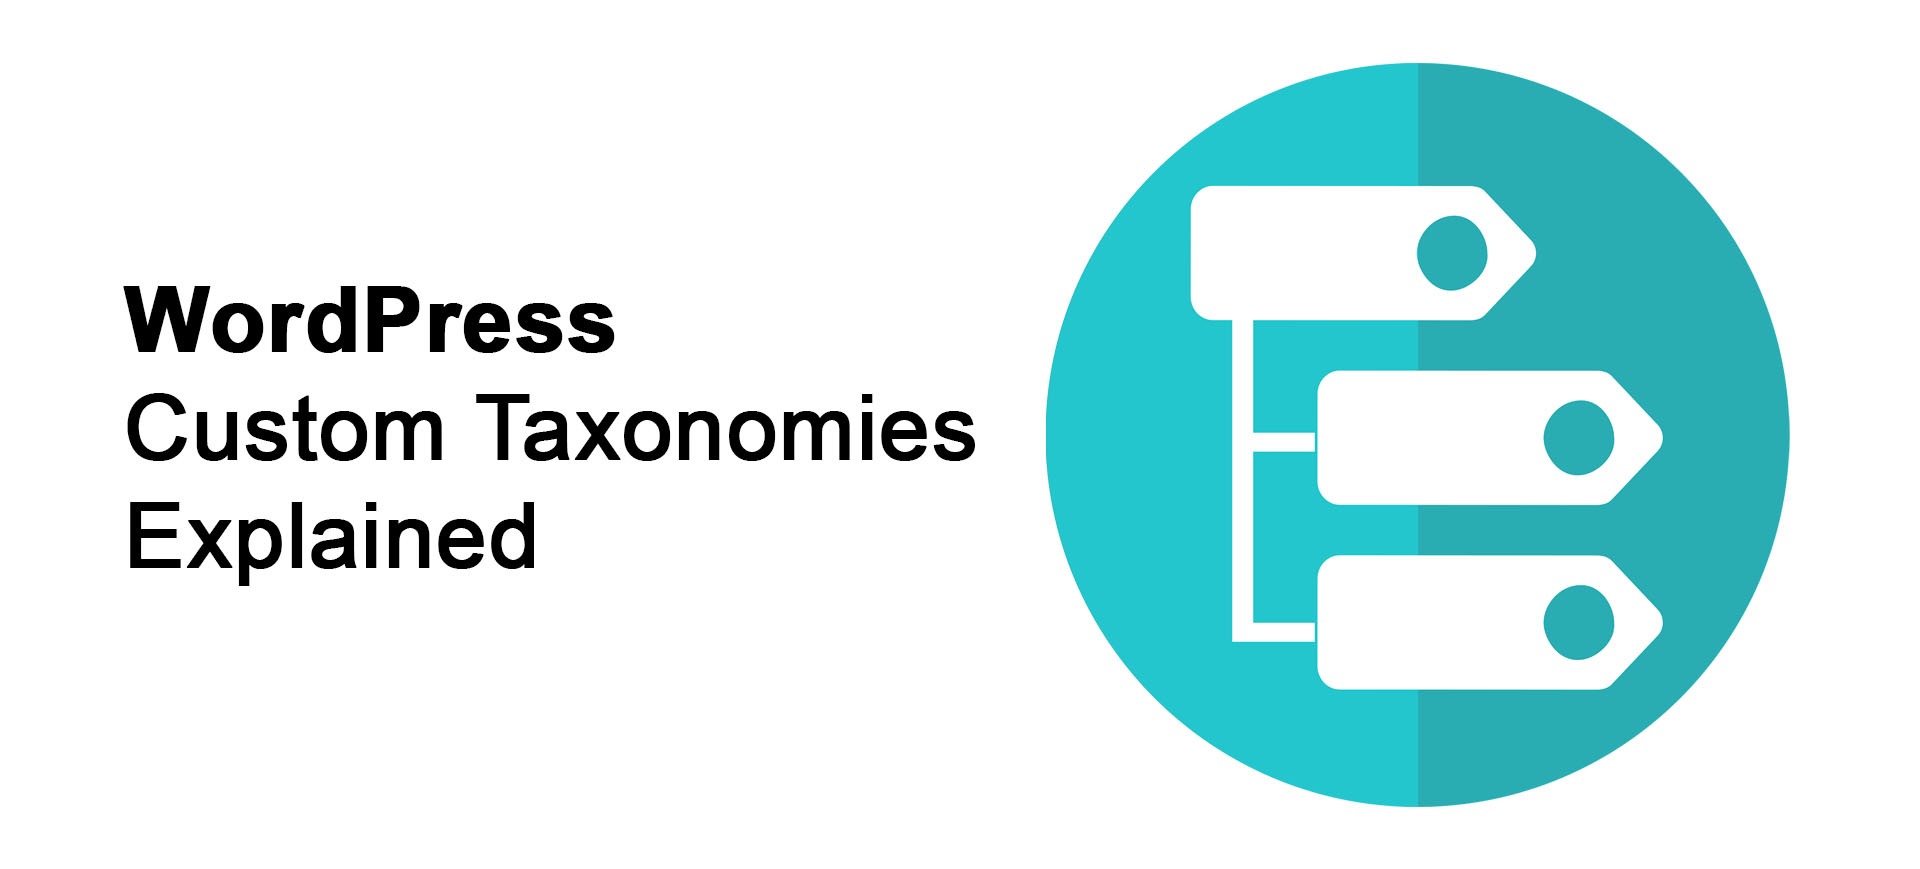 WordPress custom taxonomies